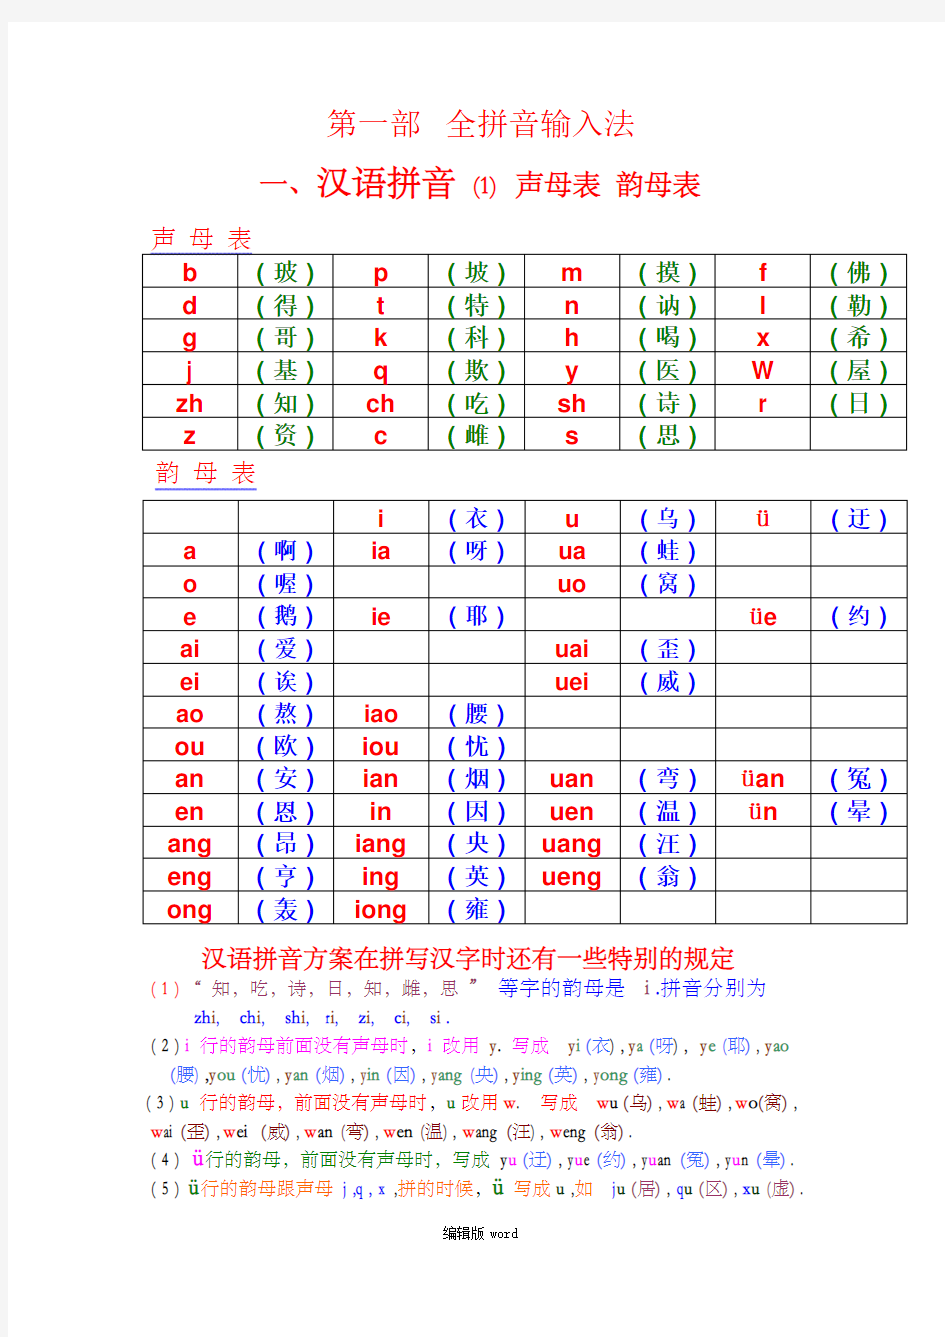 汉语拼音——声母_韵母全表